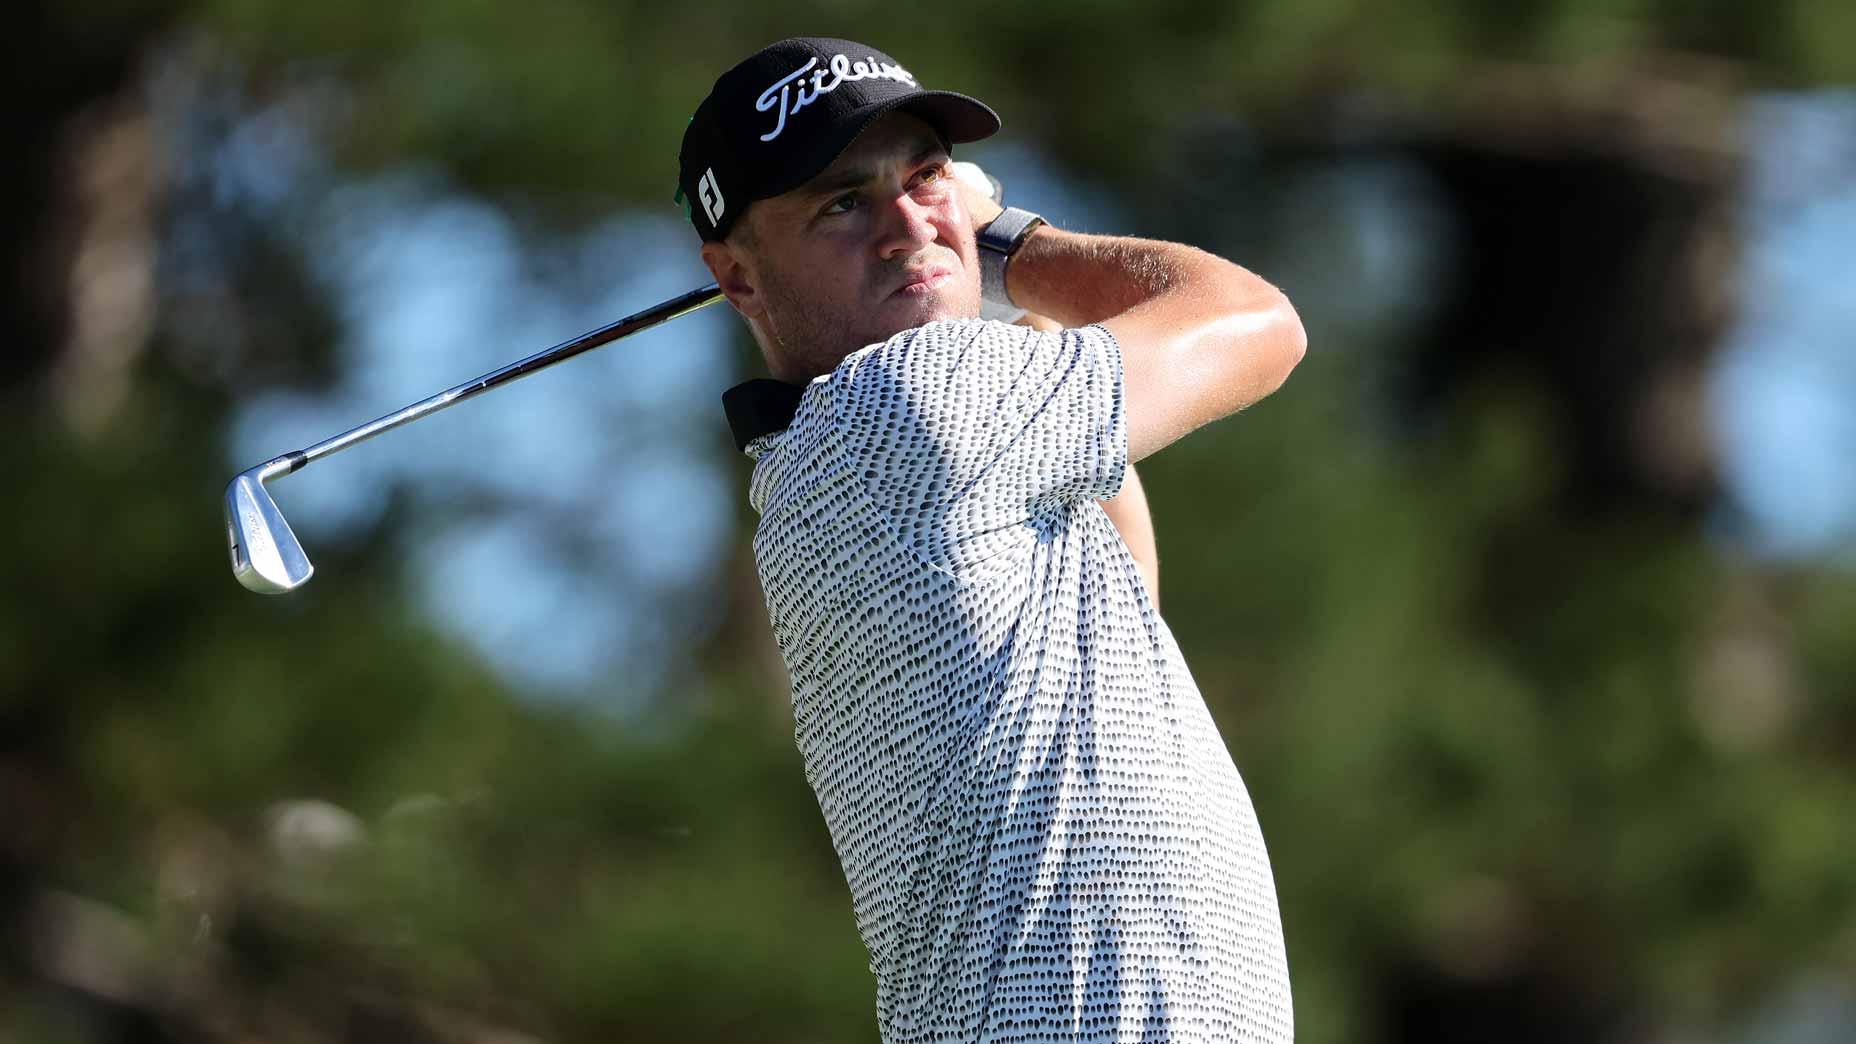 Justin Thomas hits an iron shot during a recent PGA Tour event